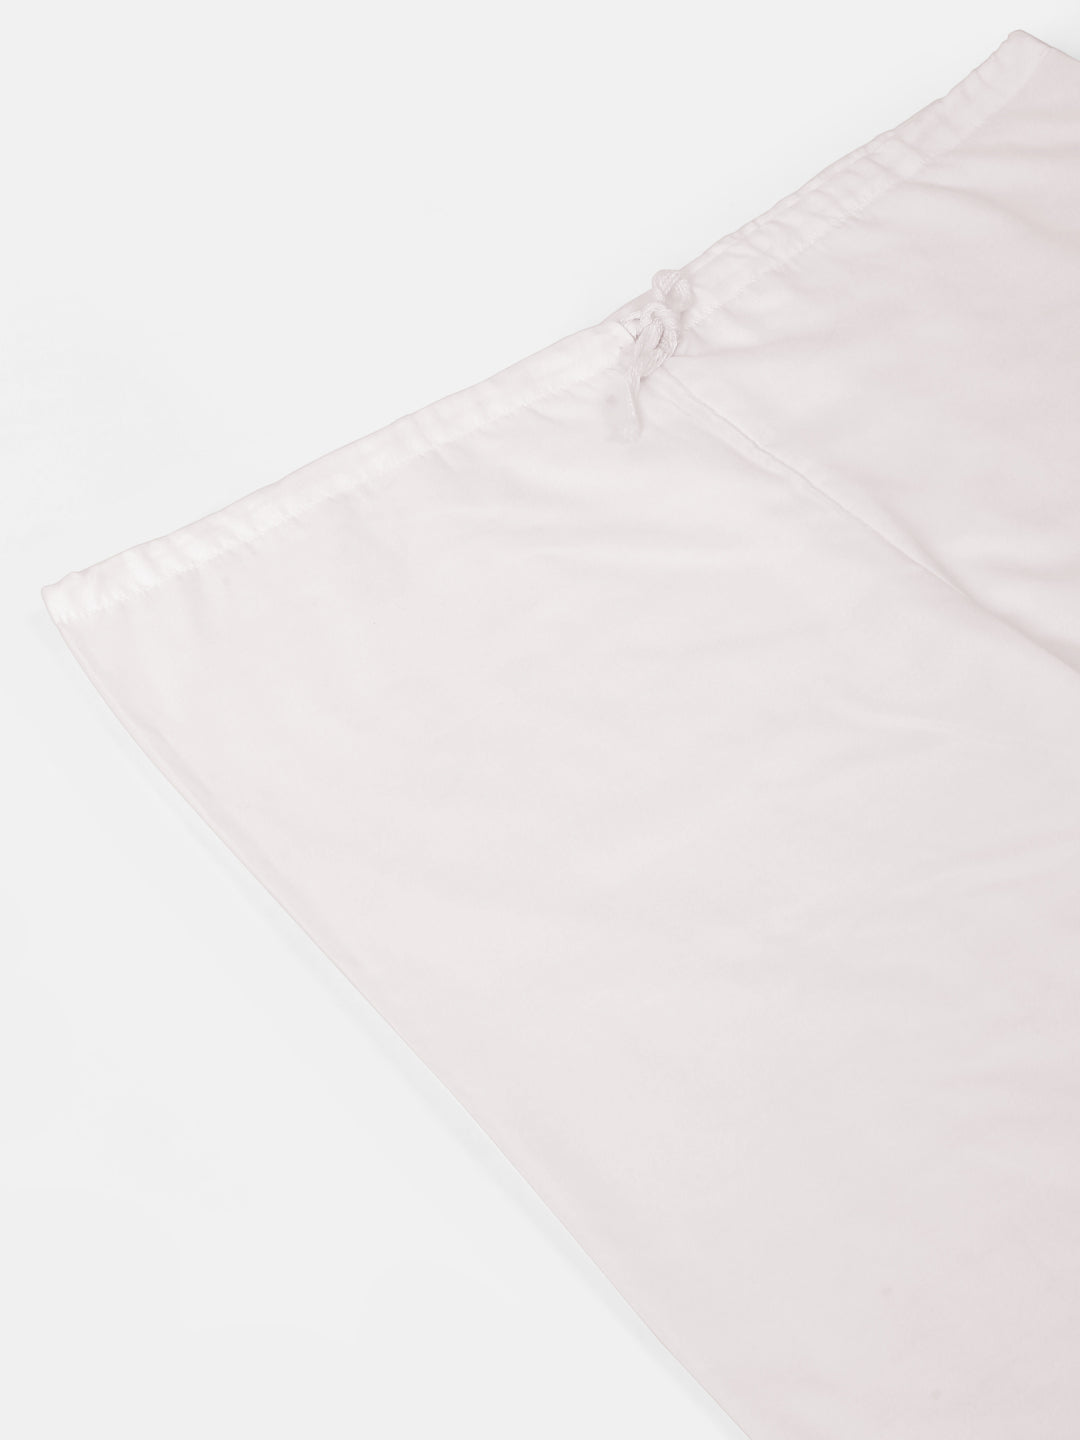 Men's Cotton Solid Kurta Pajama Sets ( JOKP 657Pink )